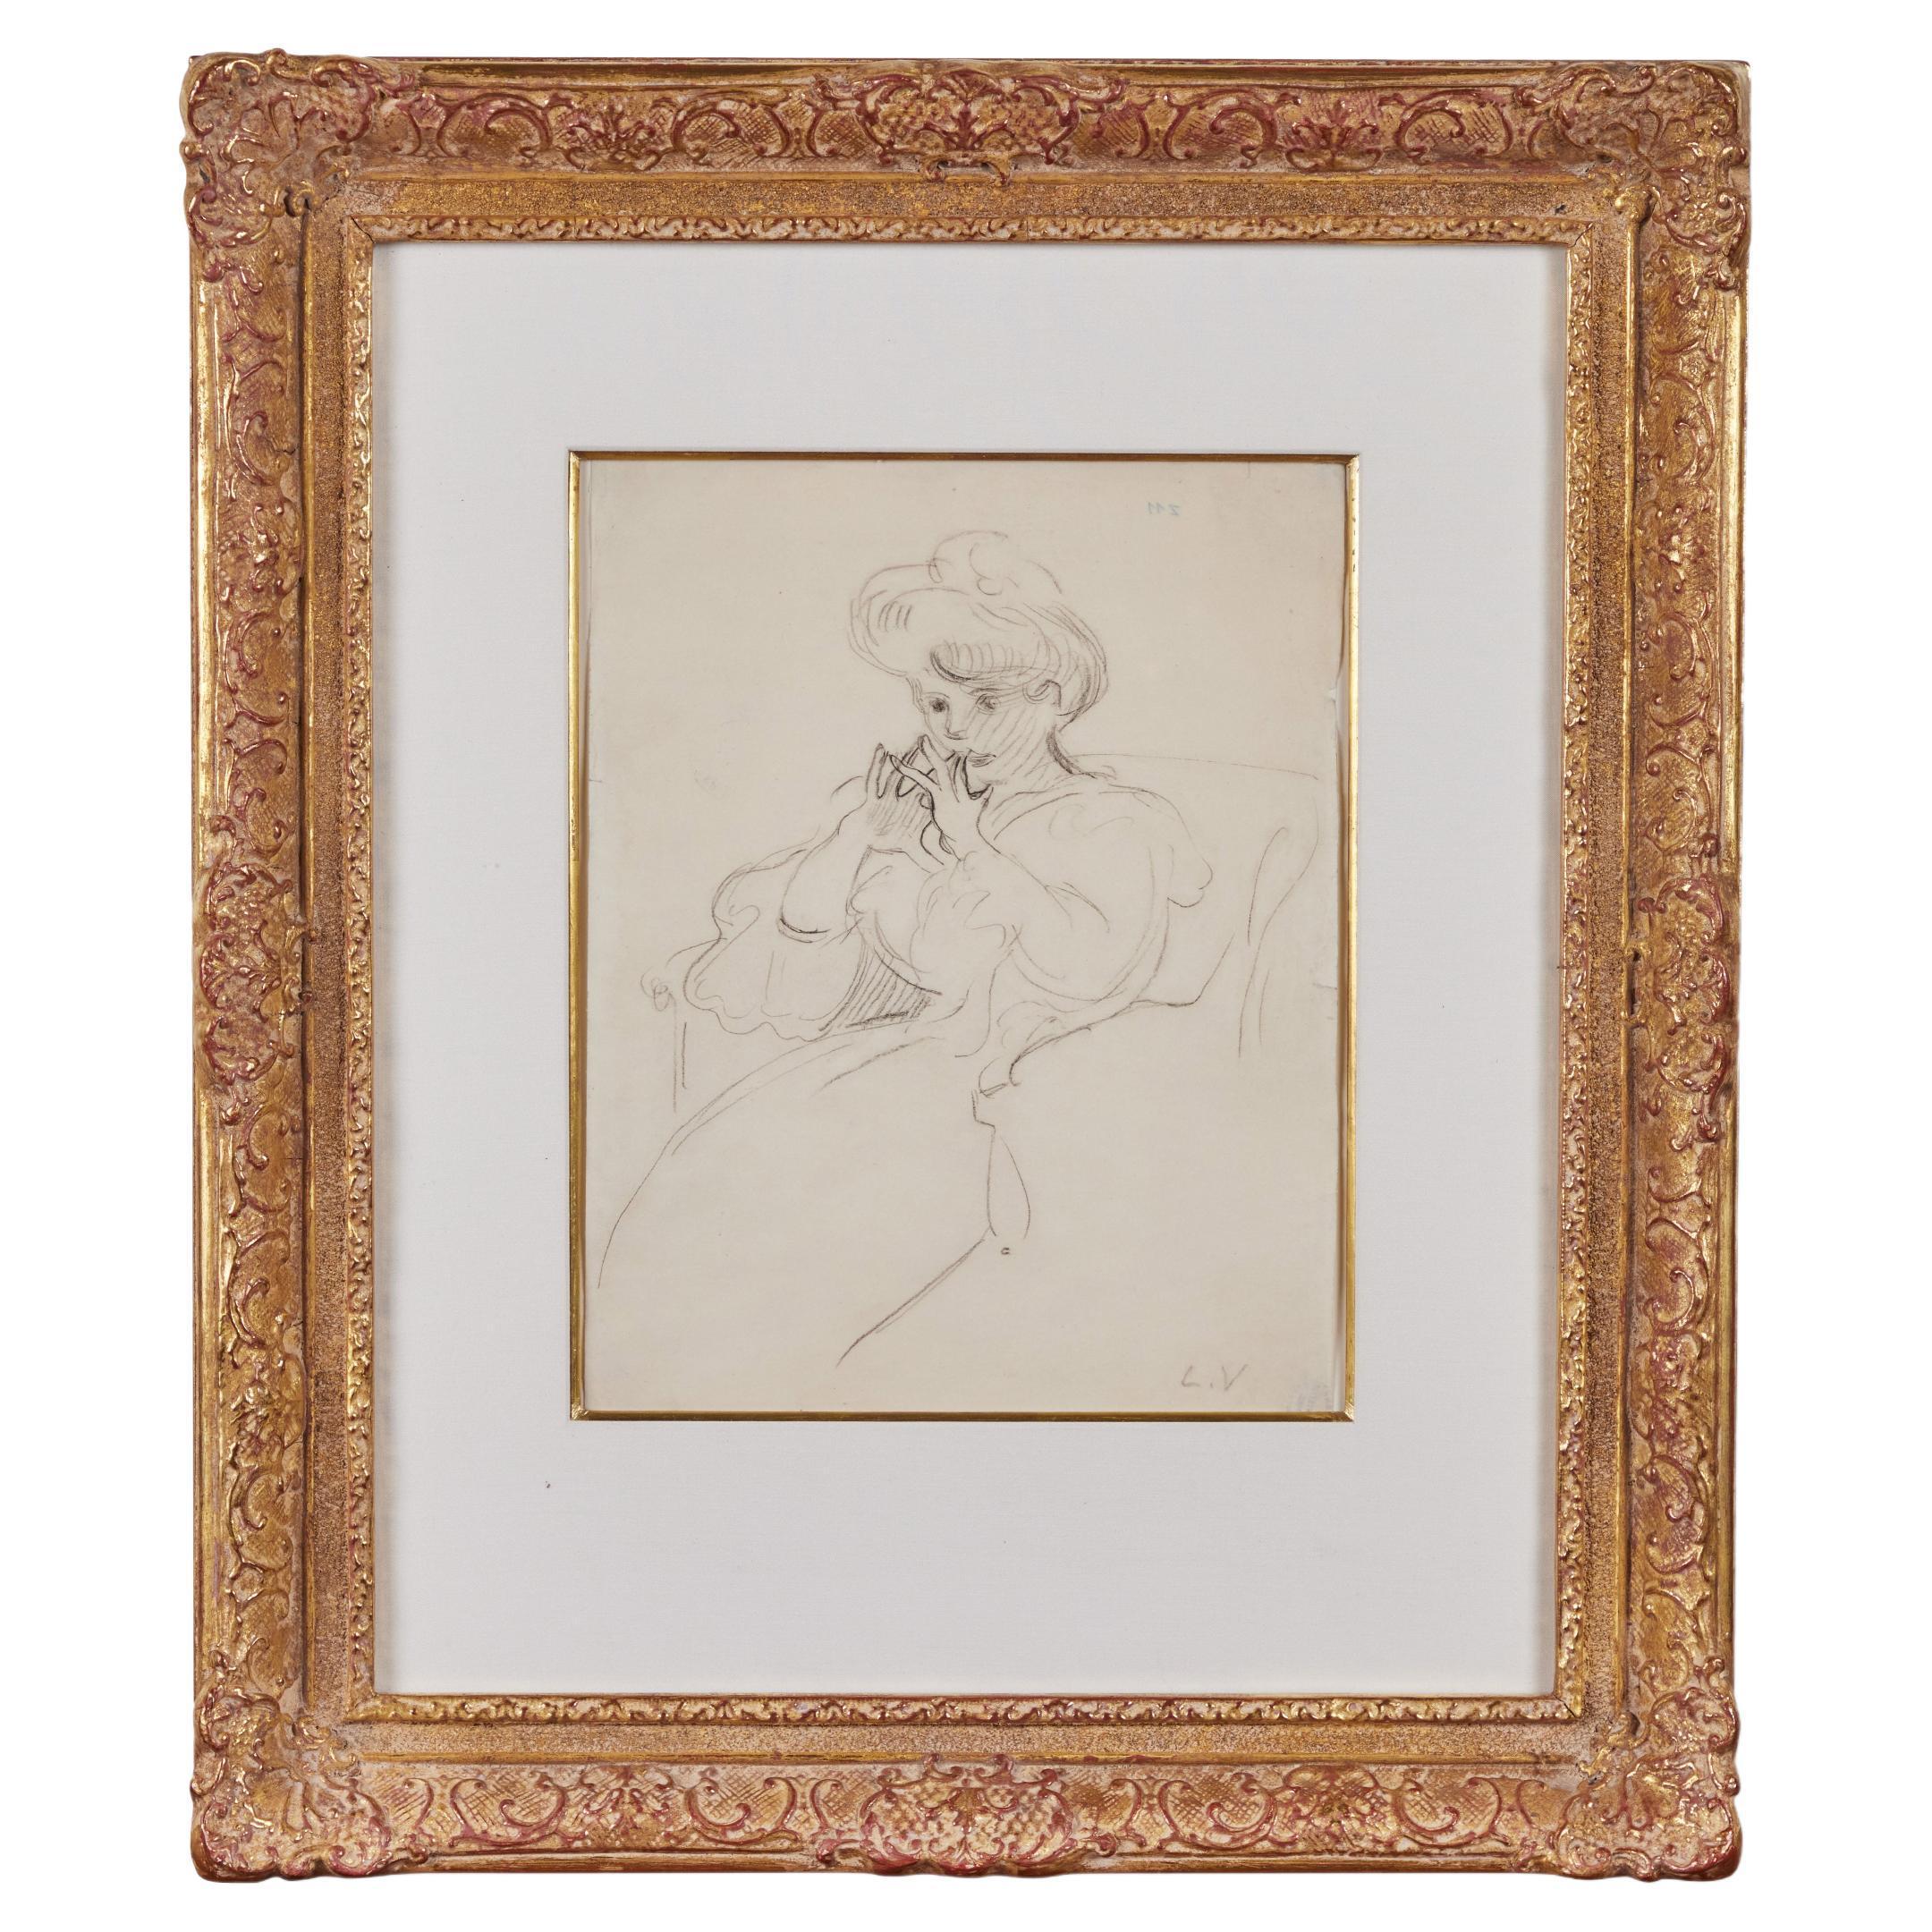 Antique, Pencil Portrait of a Woman - Art by Louis Valtat